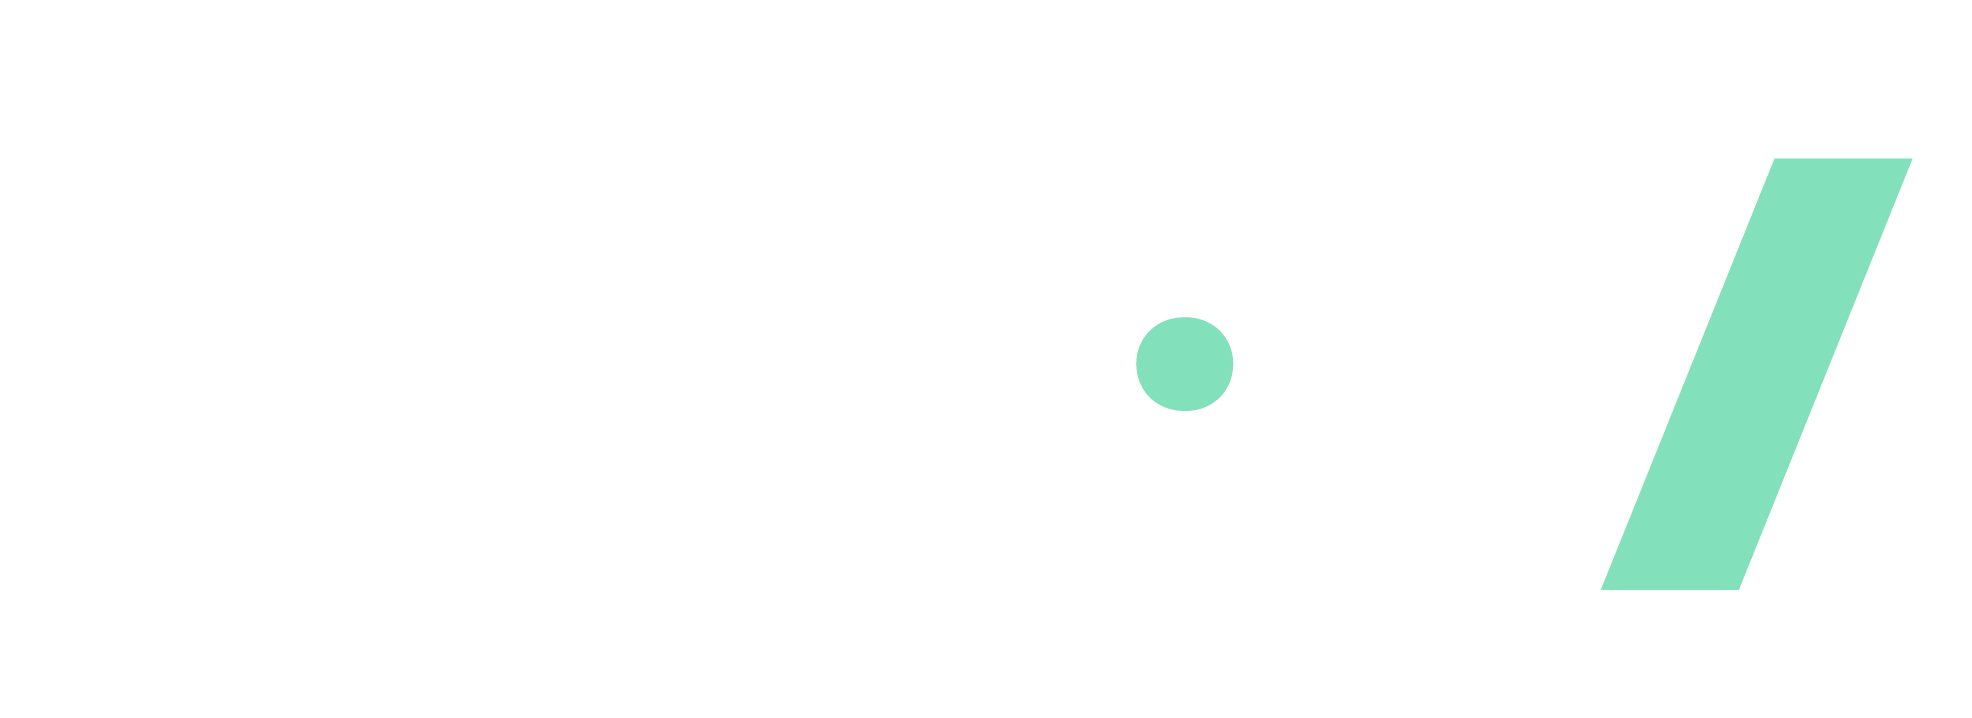 Curiosités Magazine